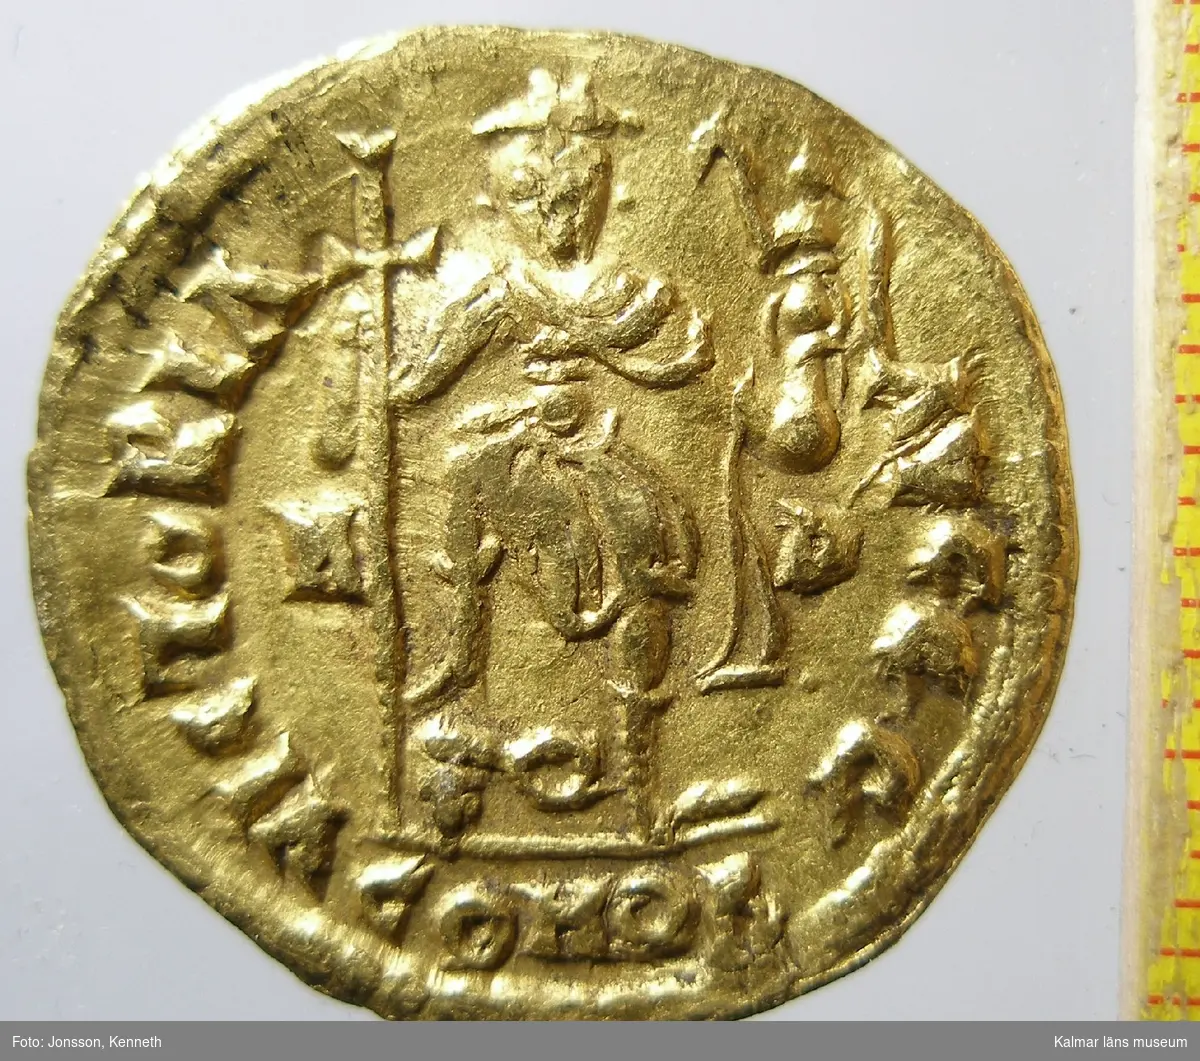 KLM 14347 Mynt, solidus, guld. Präglad för Libius Severus? (461-465). Bestämning: F 120, RICX2723.